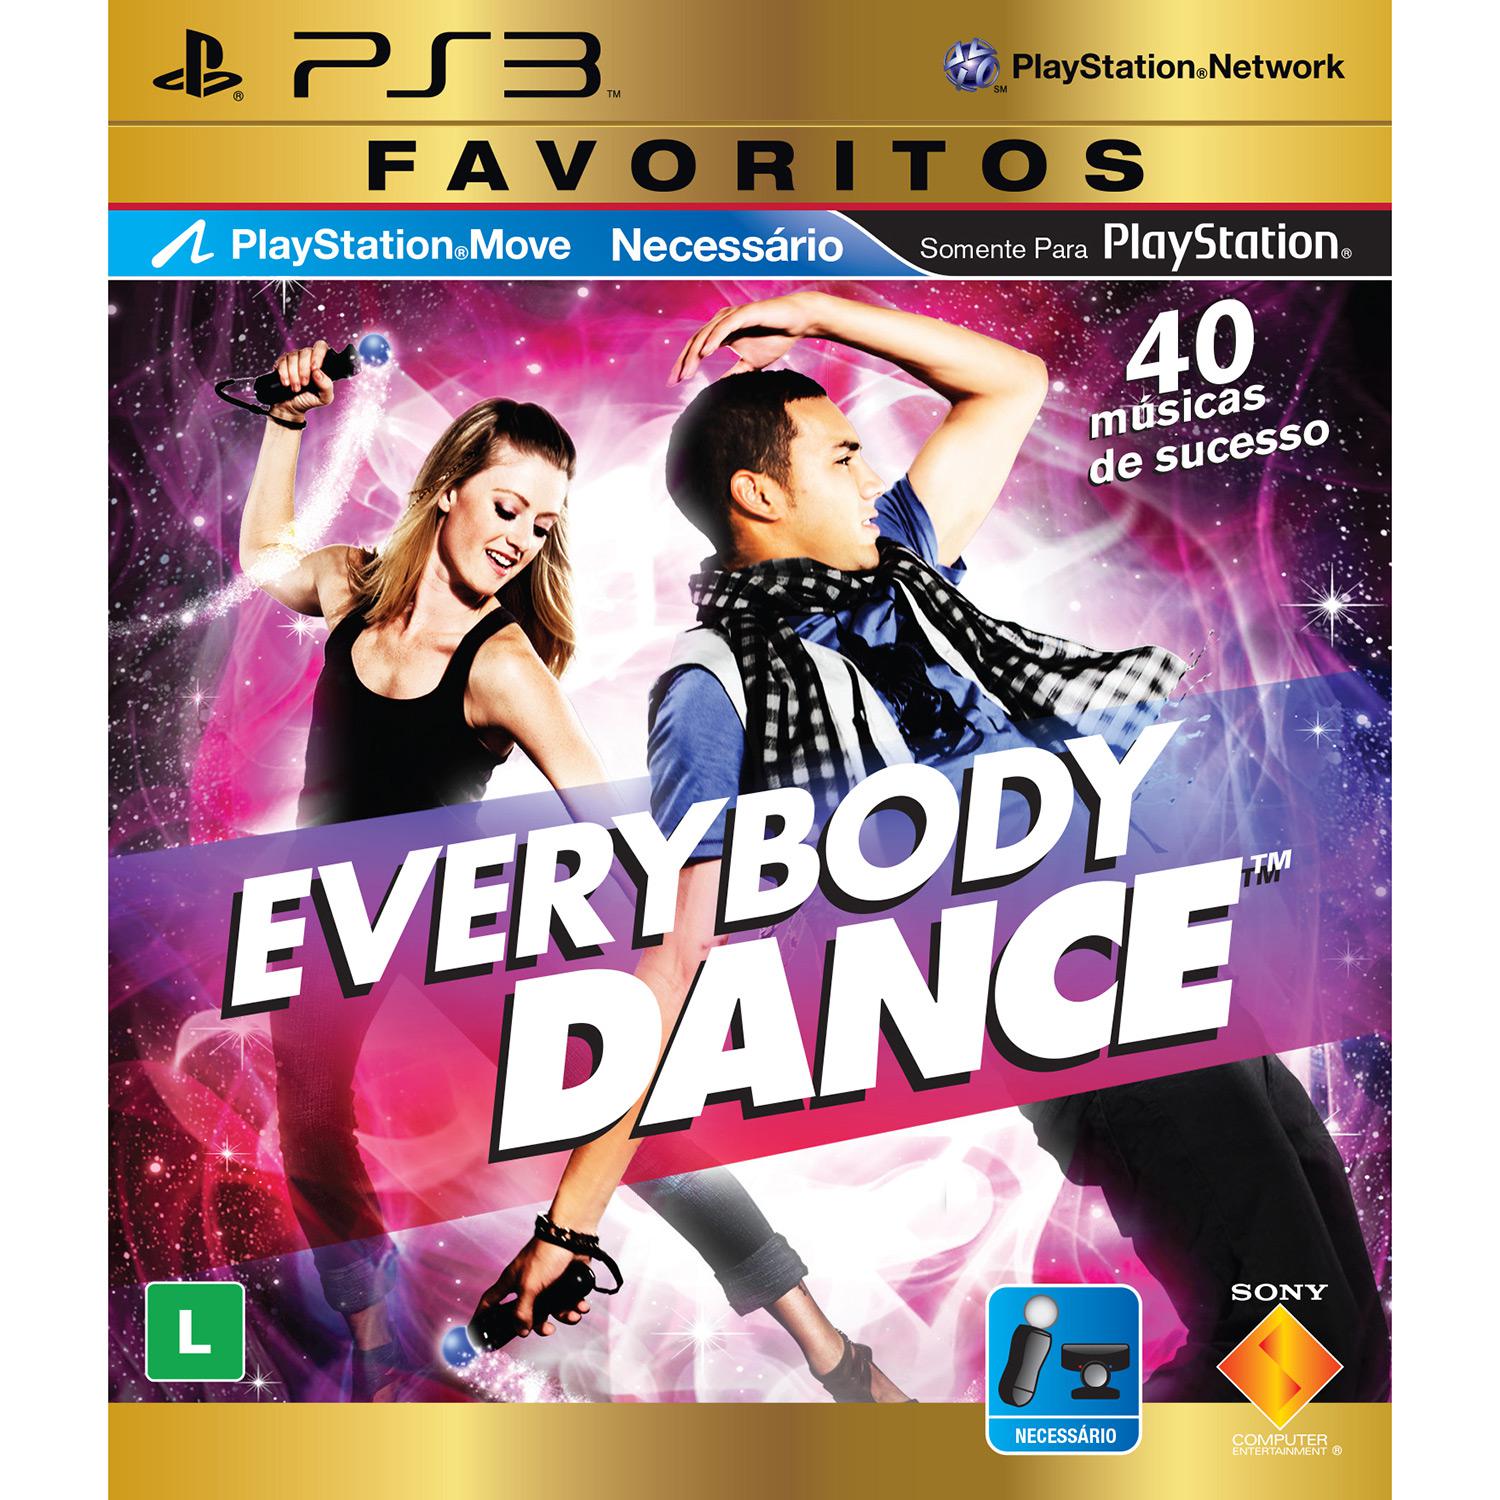 Game Everybody Dance - Favoritos - PS3 é bom? Vale a pena?